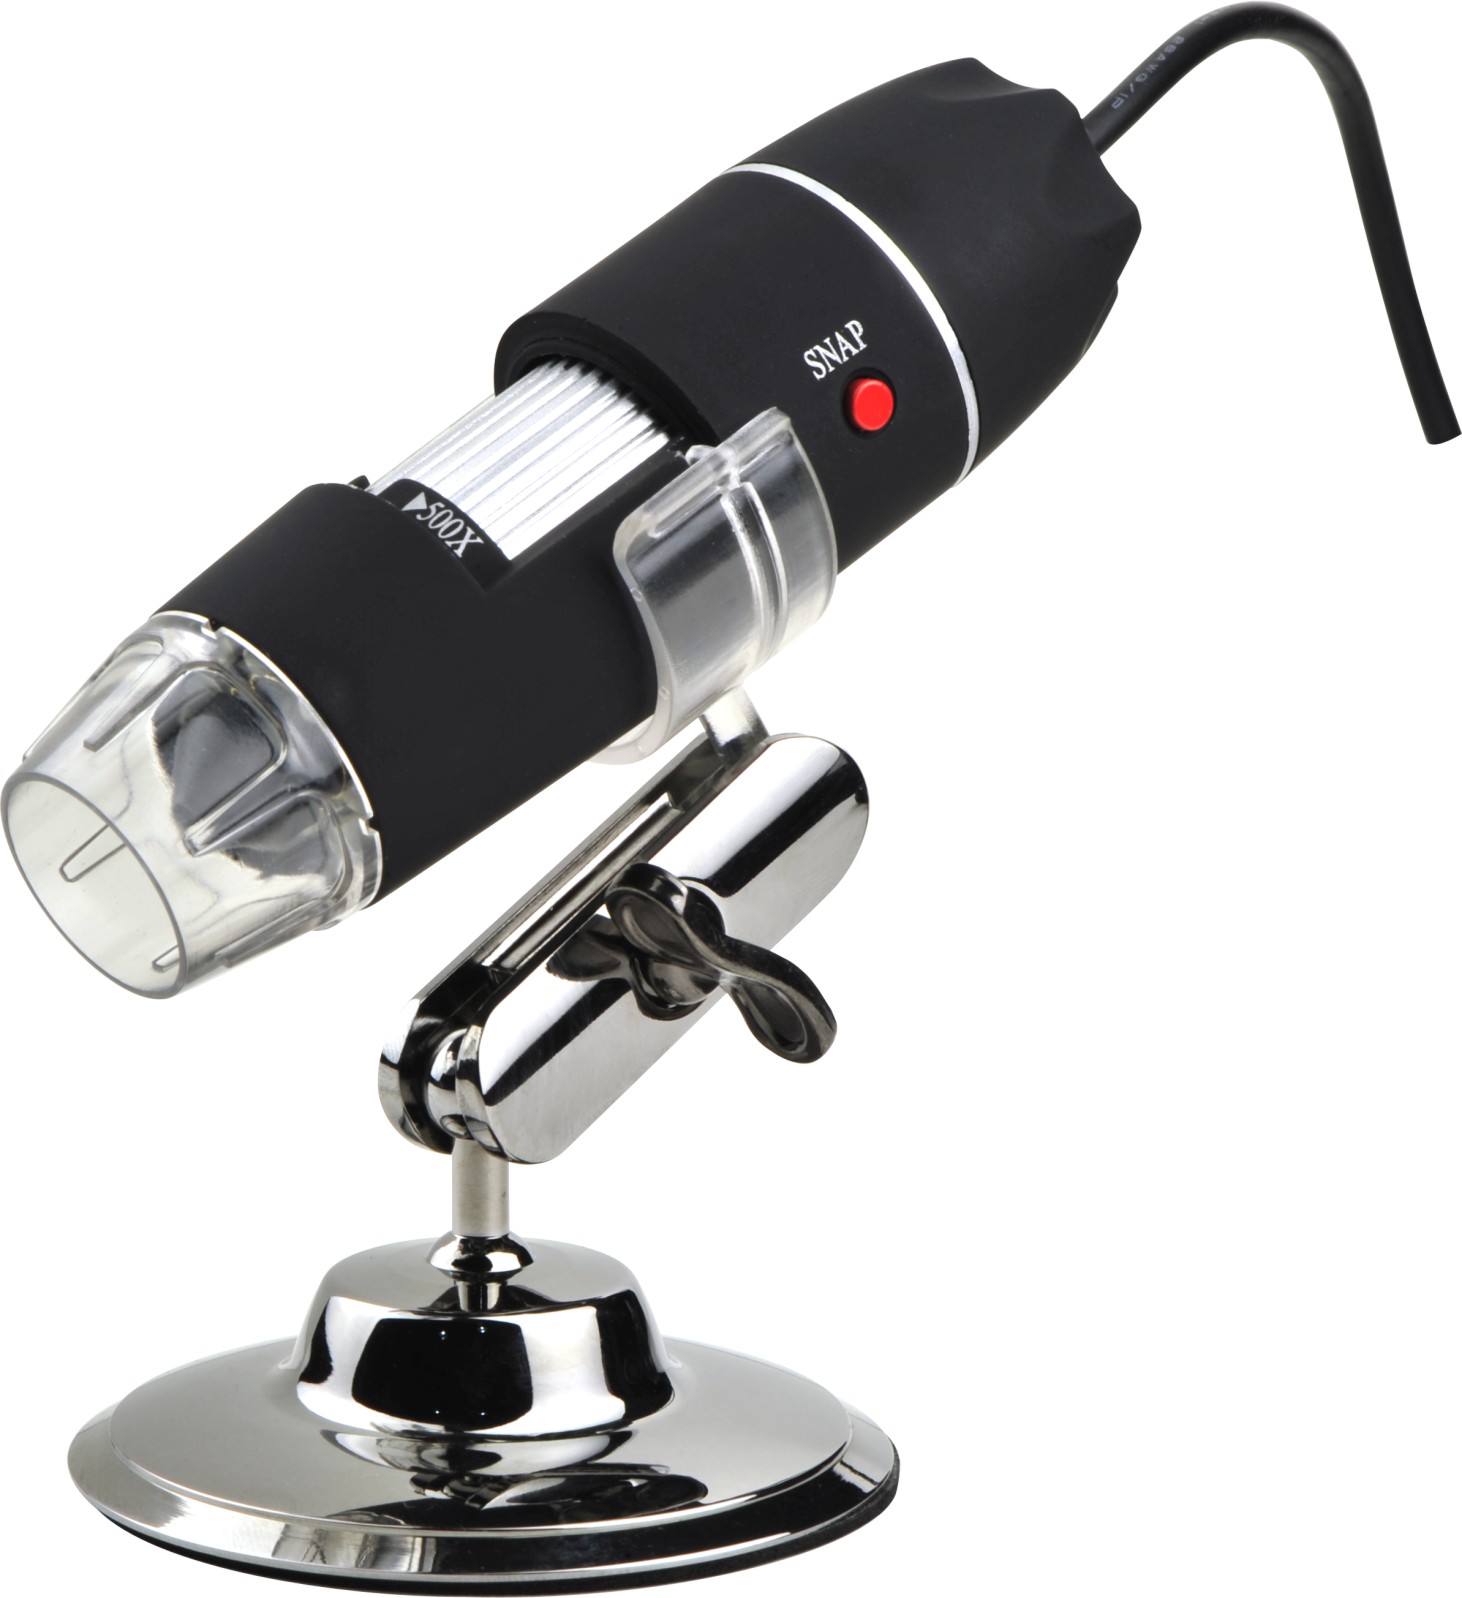 Microscopio USB DMU-U500x digital, cámara microscopio